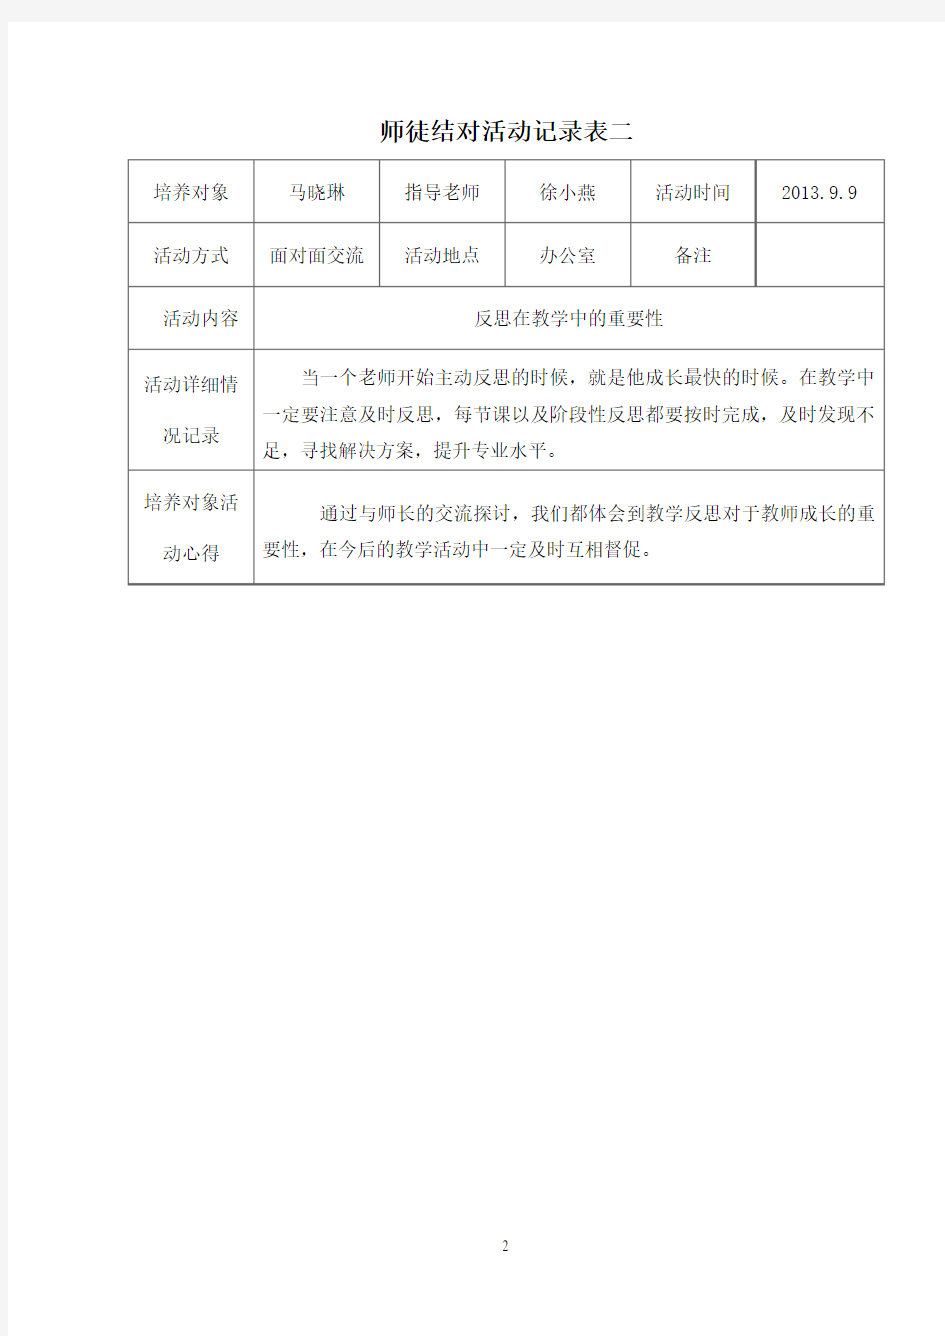 师徒结对活动记录表2013.09-2013.12